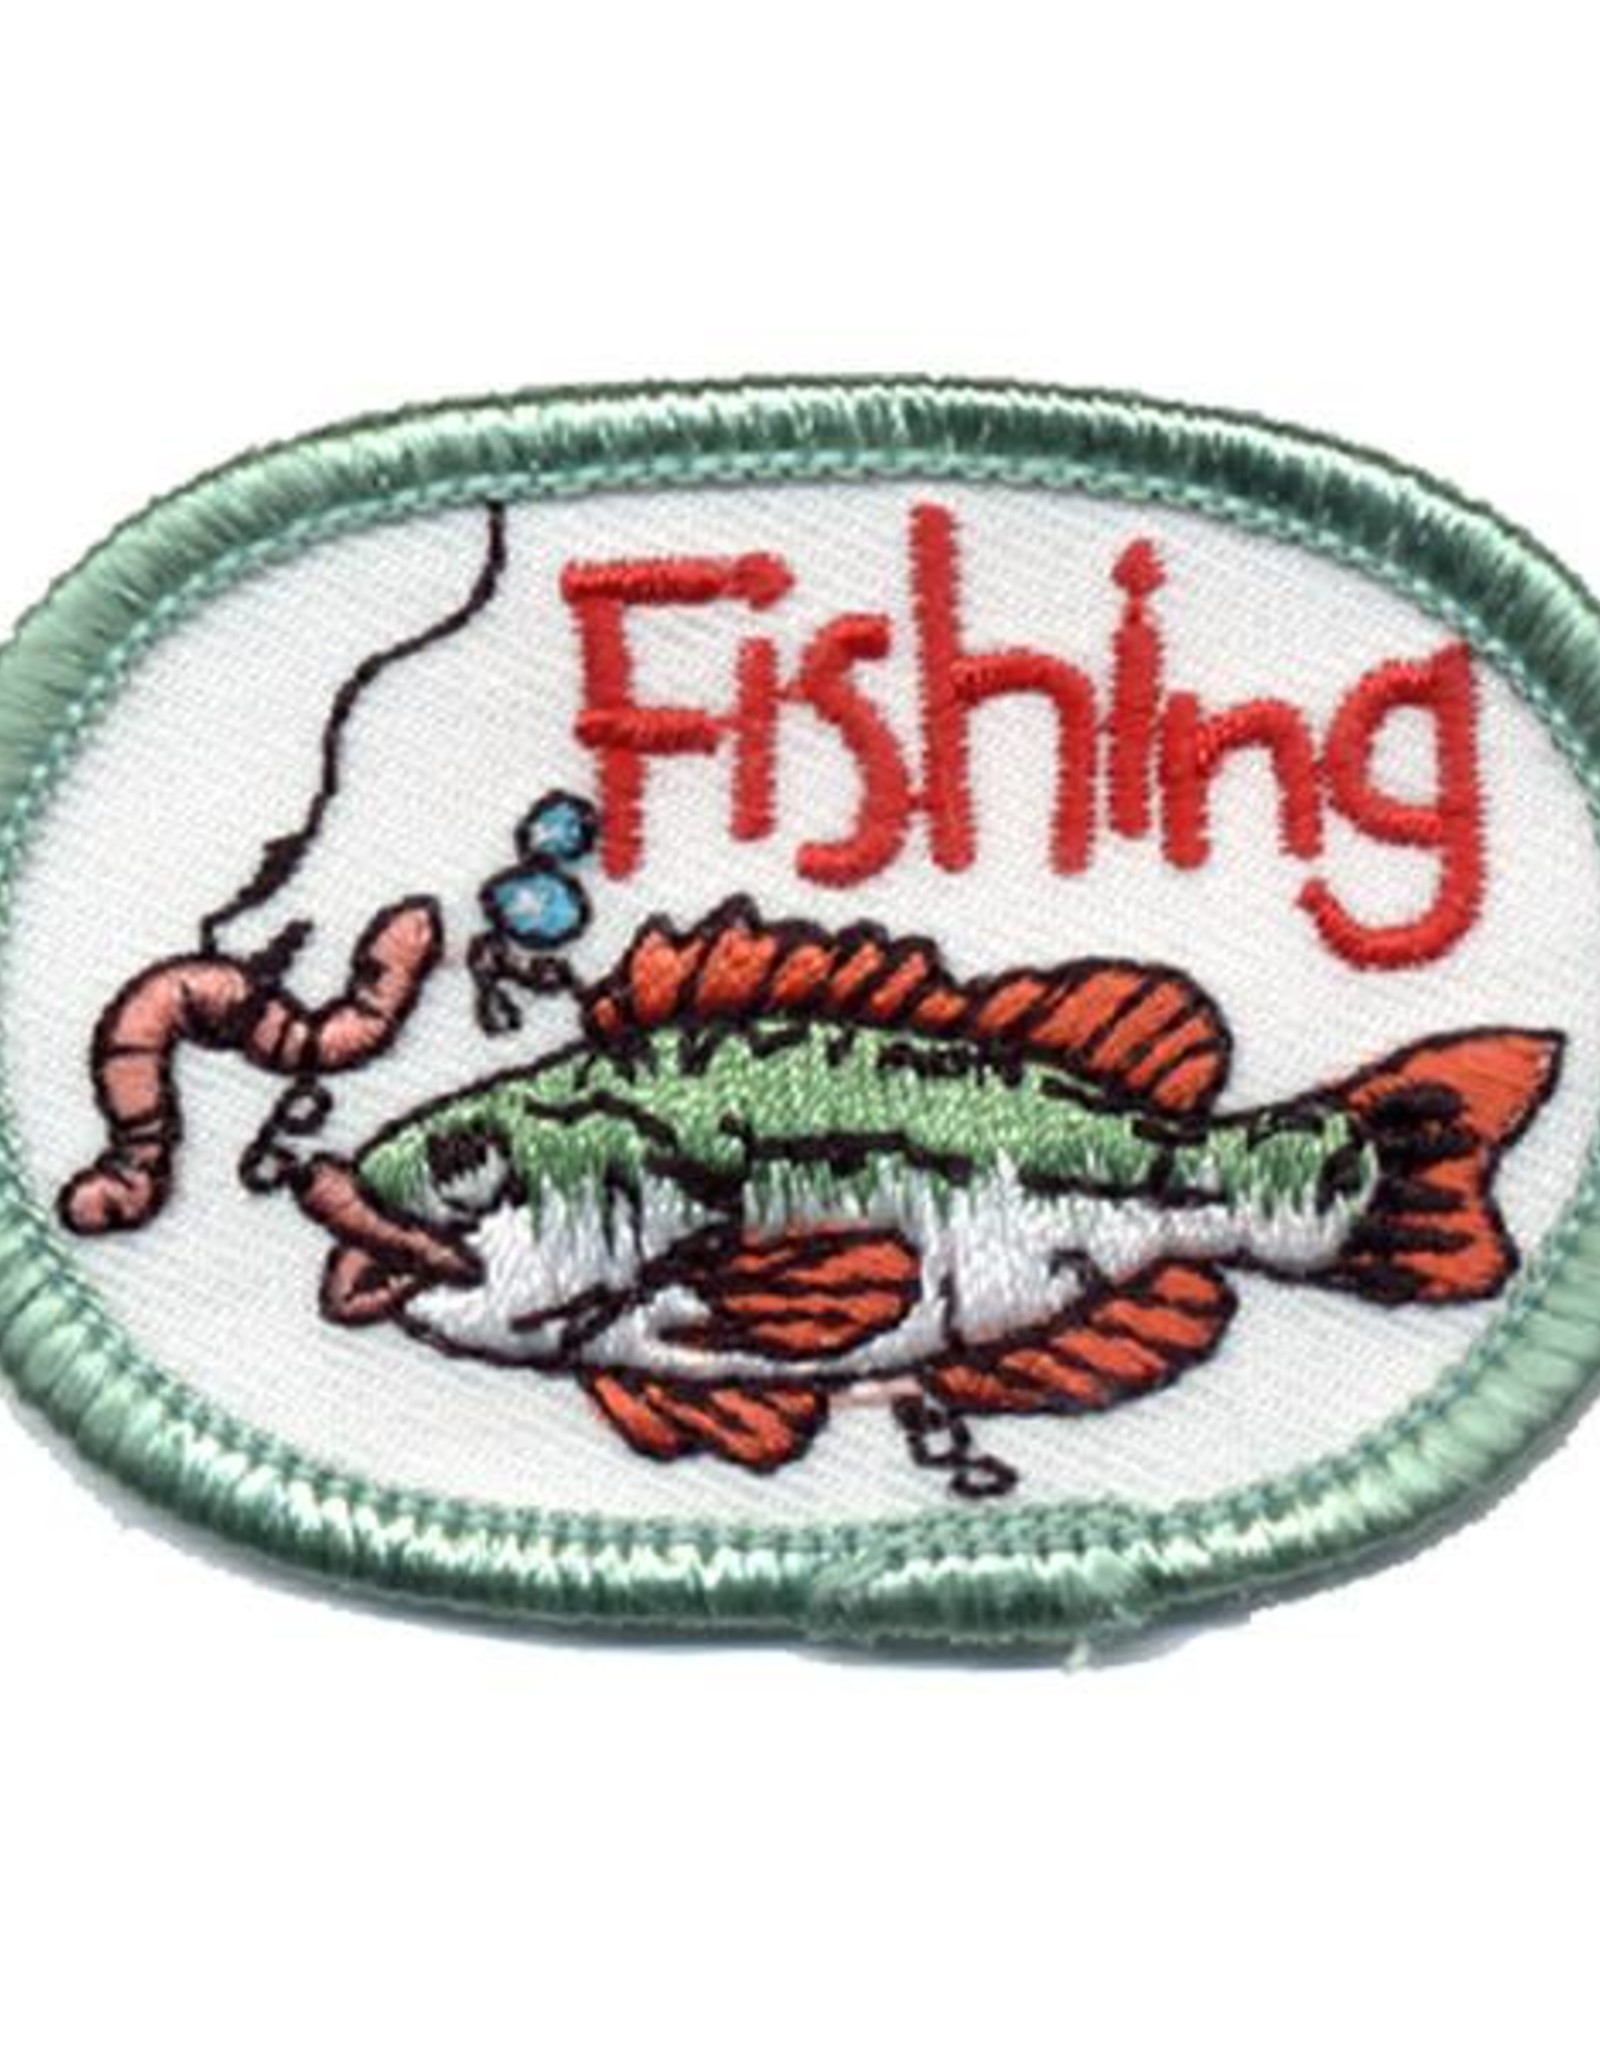 Advantage Emblem & Screen Prnt Fishing (Fish w/ Worm)Oval Fun Patch